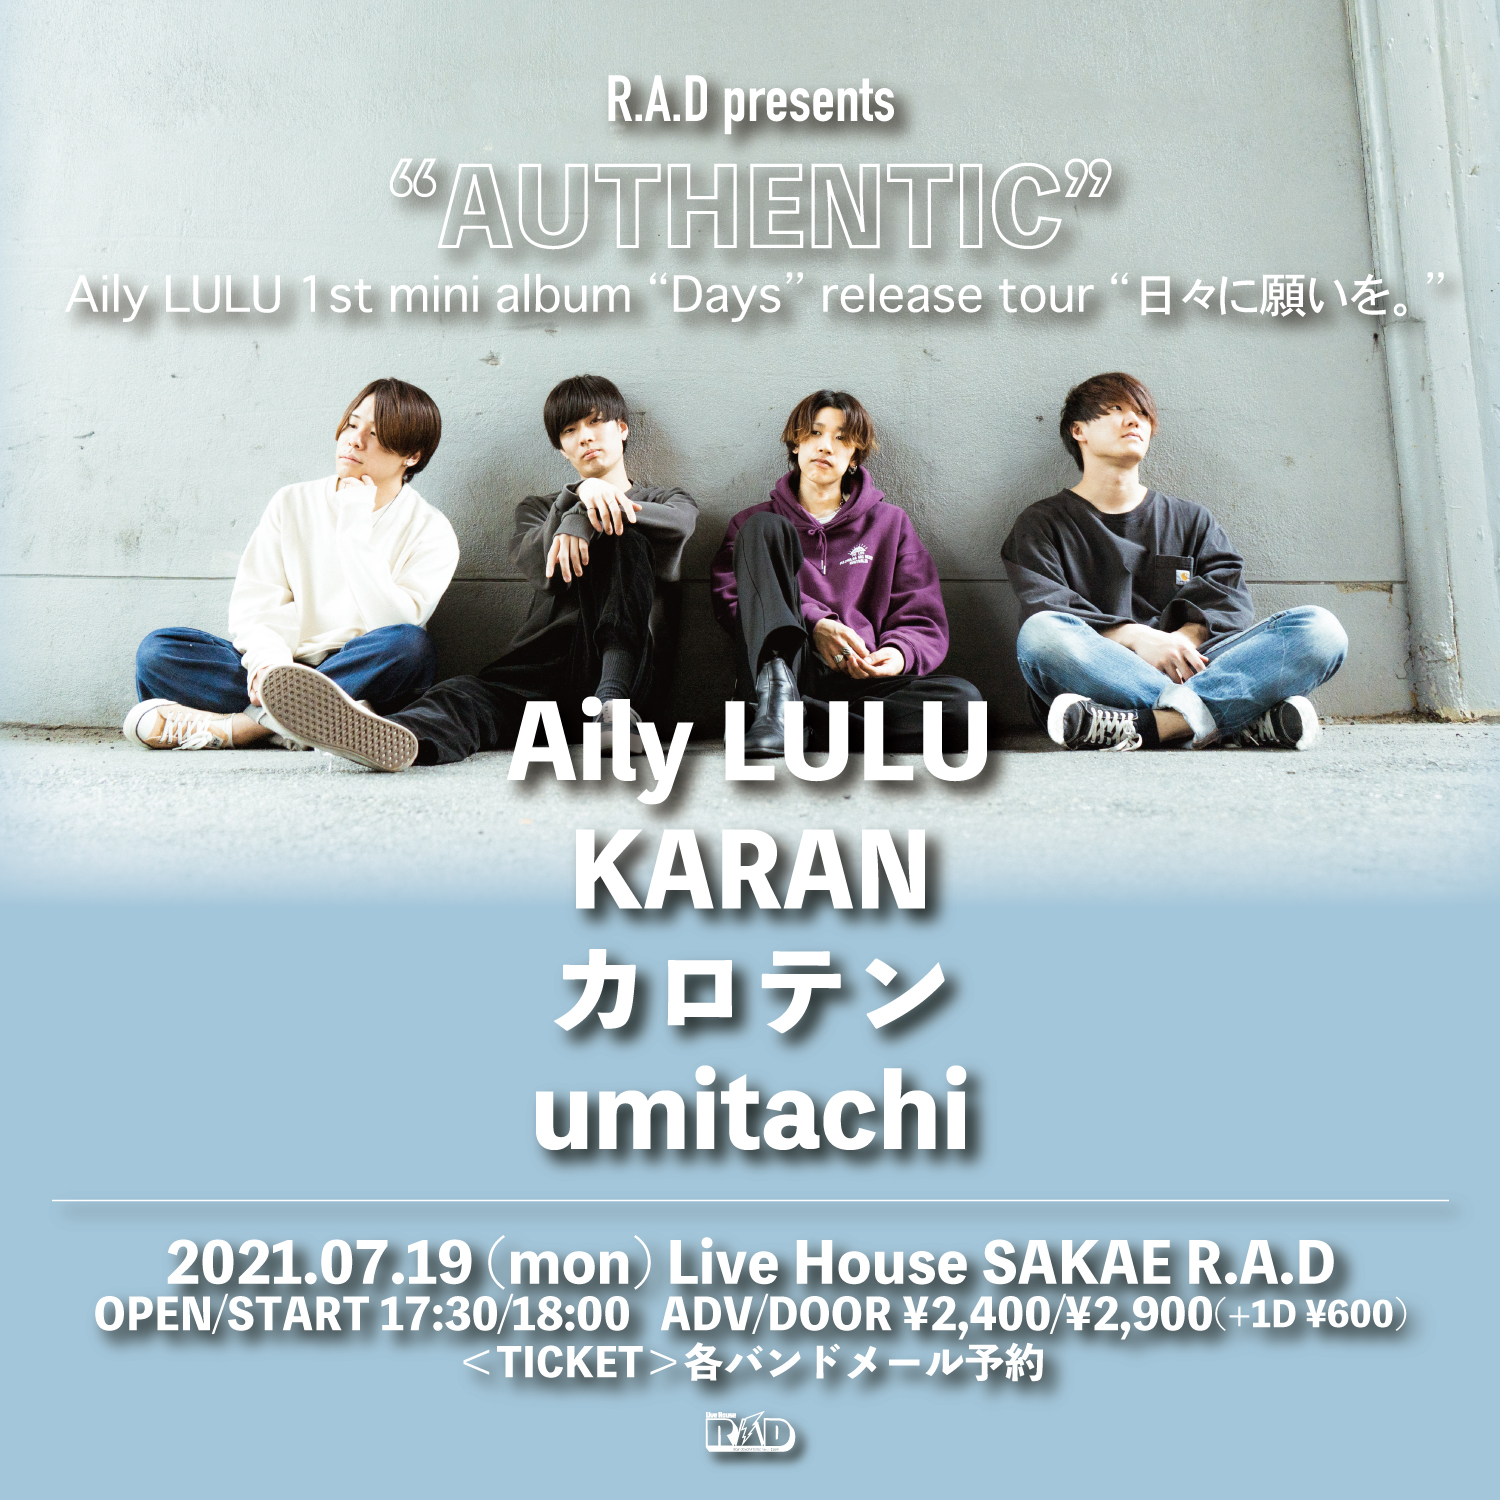 R.A.D prents "AUTHENTIC" Aily LULU 1st mini album “Days” release tour “日々に願いを。”